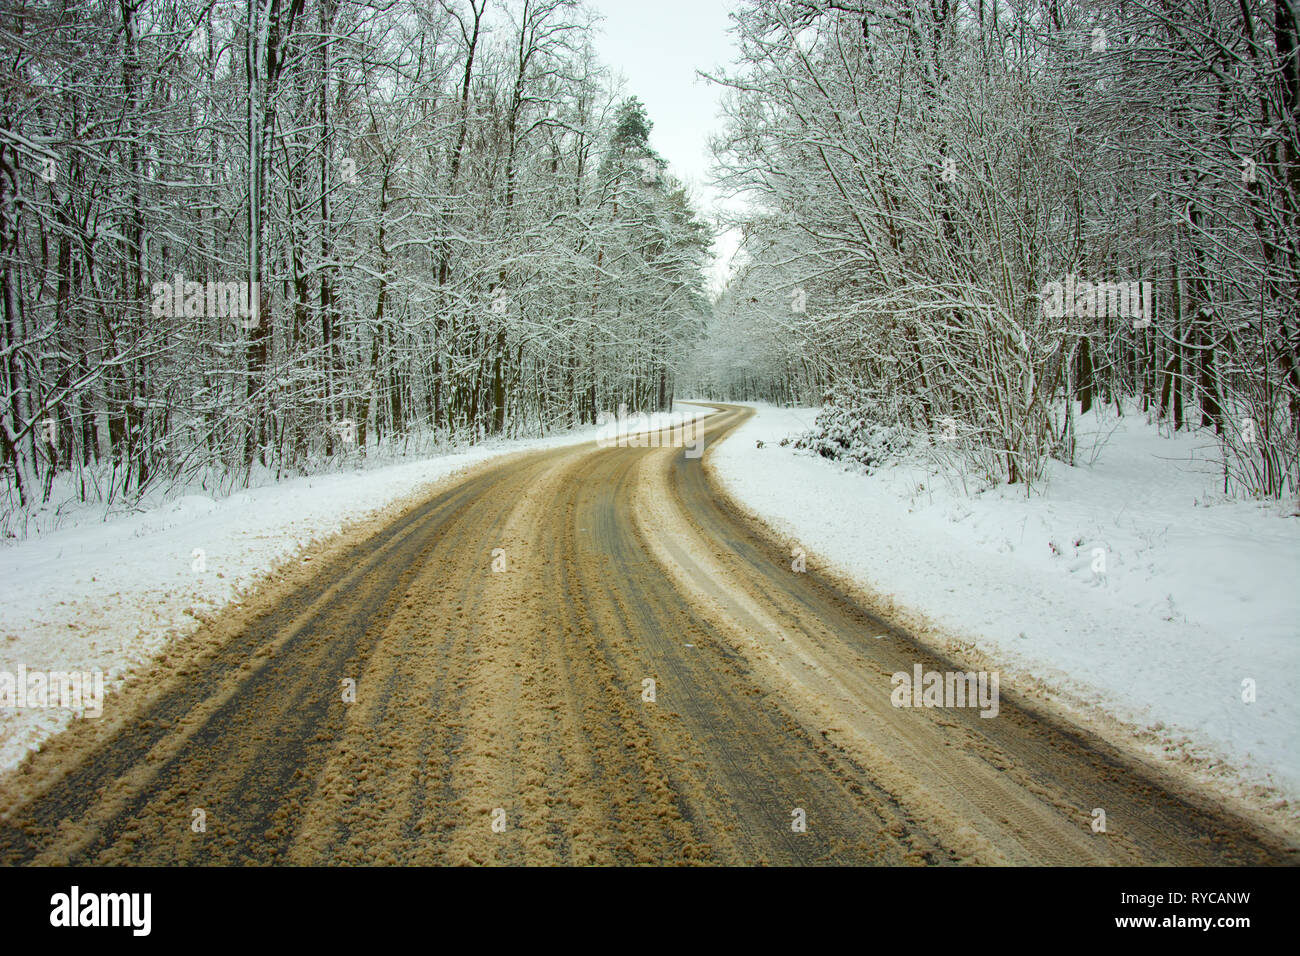 Le sable mélangé avec de la neige sur une route sinueuse à travers la forêt - vue d'hiver Banque D'Images